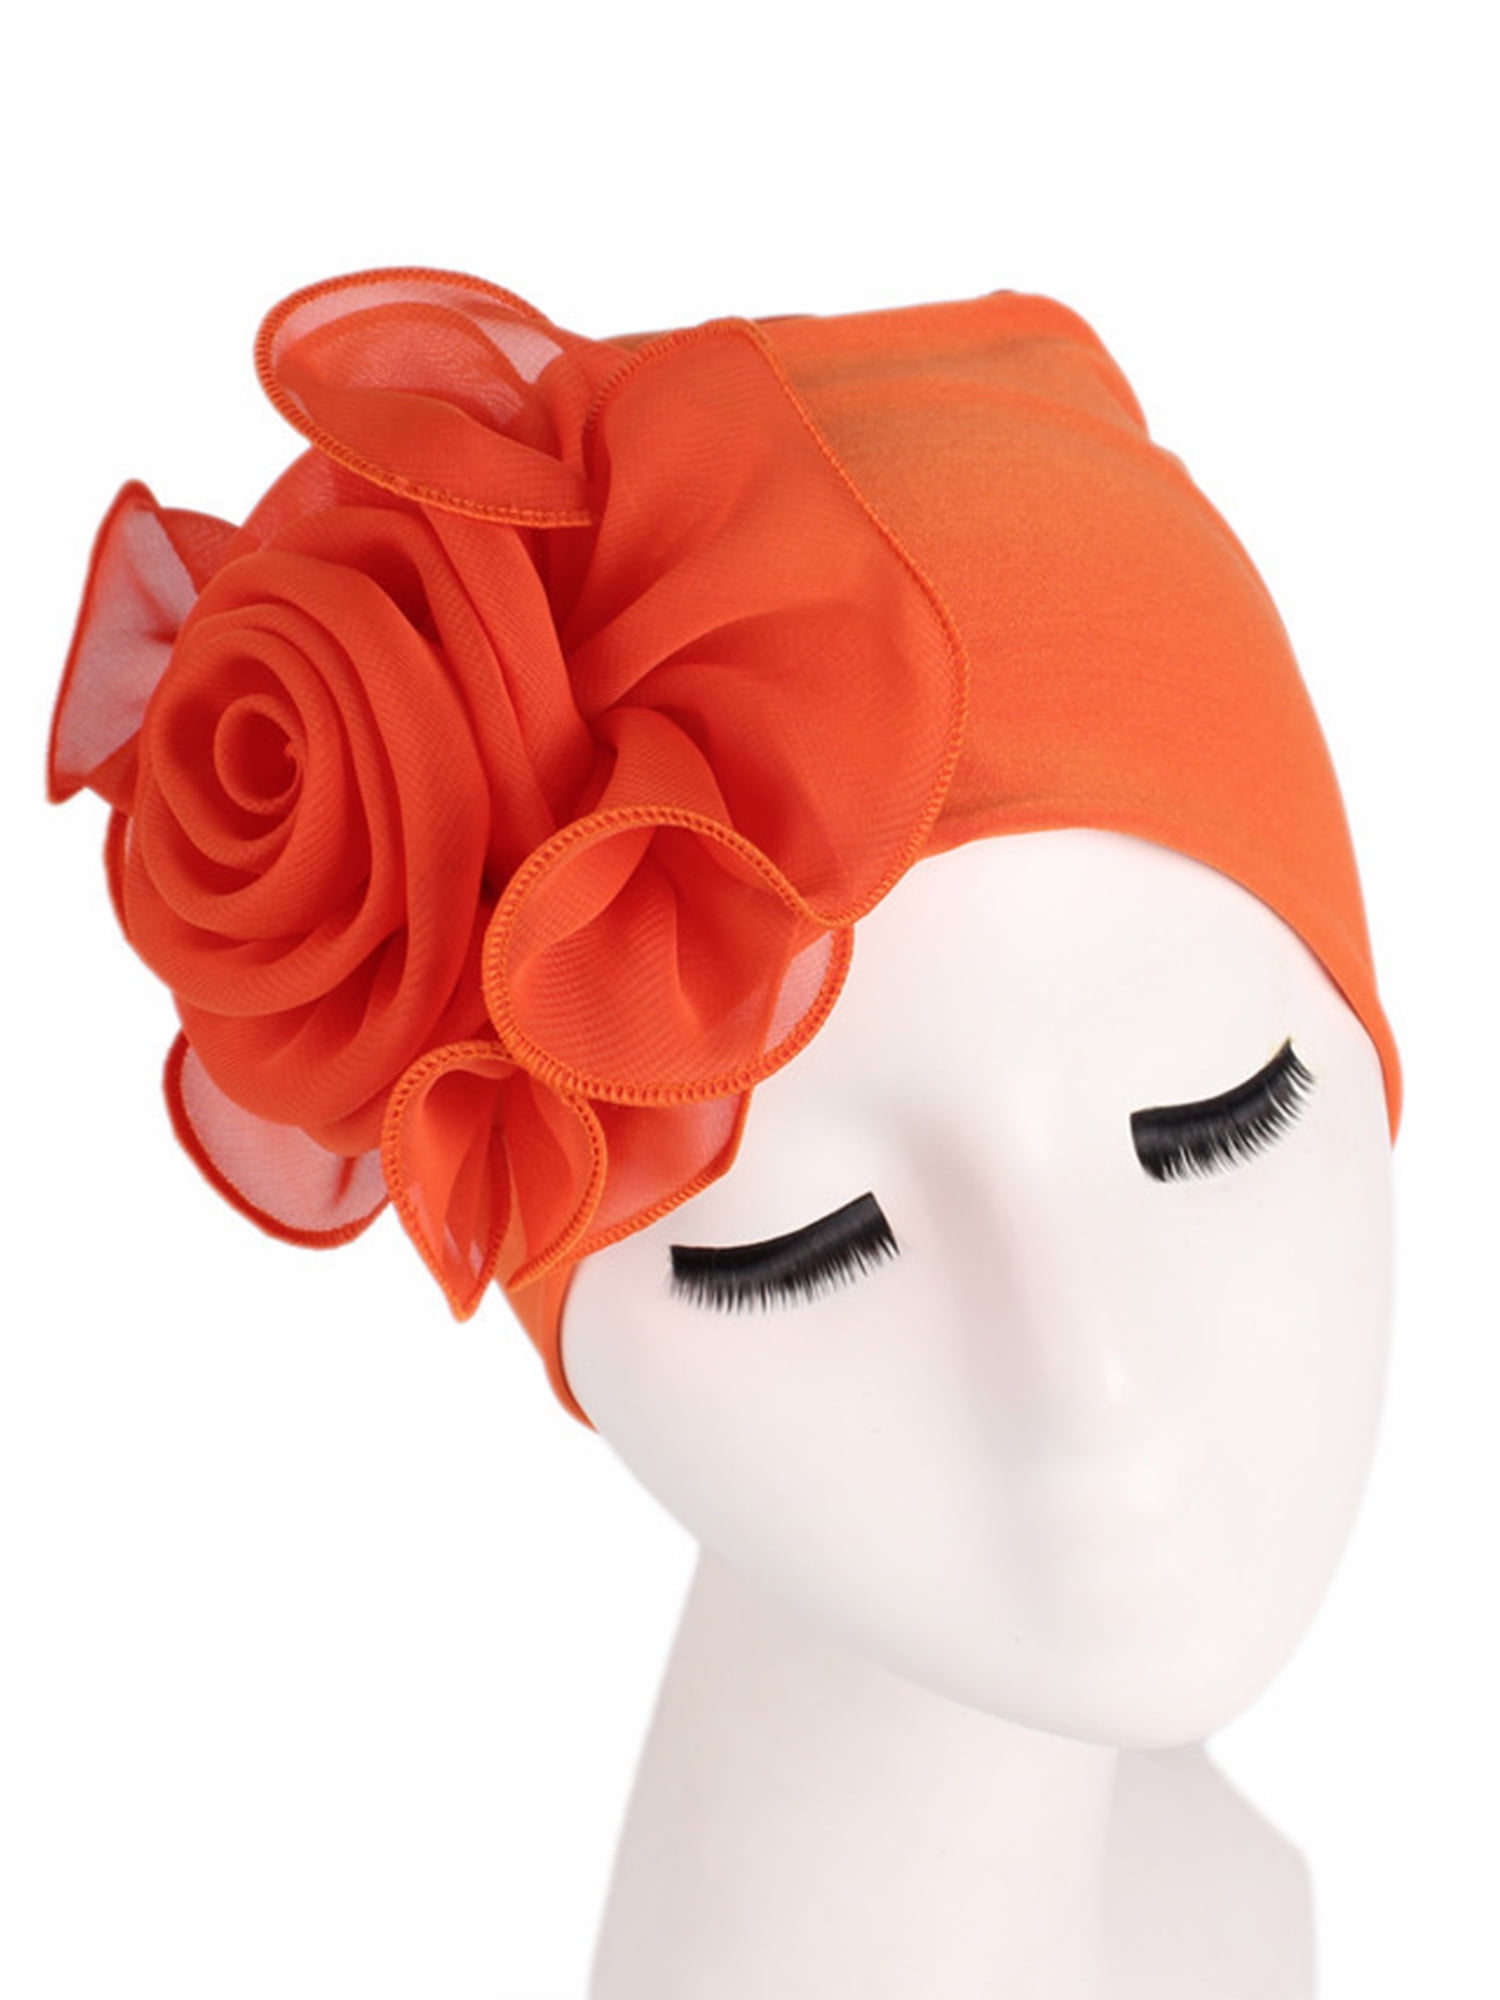 Women Flower  Cancer Chemo Velvet Hat Turban Head Wrap  Showy